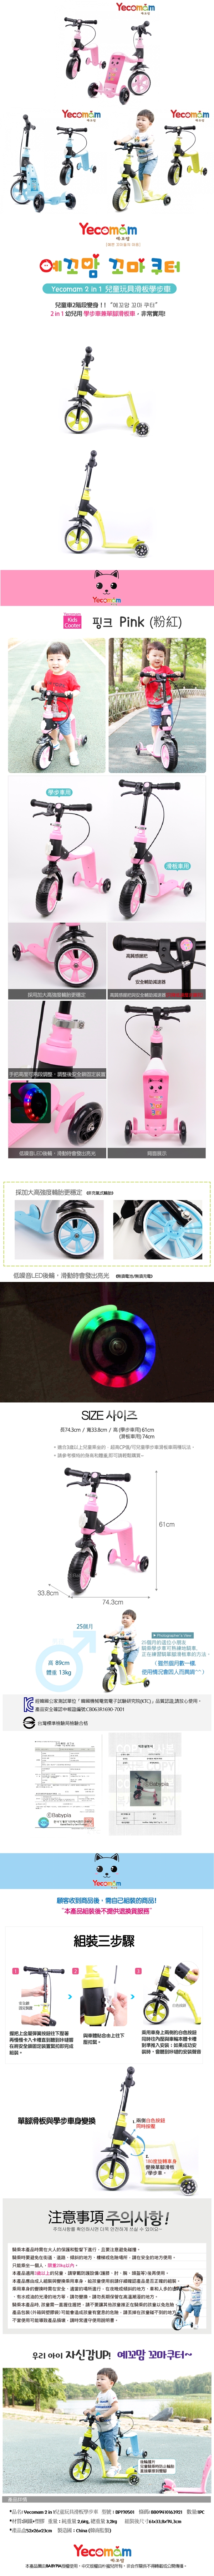 朴蜜兒-韓國Yecomam-2in1兒童玩具滑板學步車(粉色/藍色/綠色)BP170501